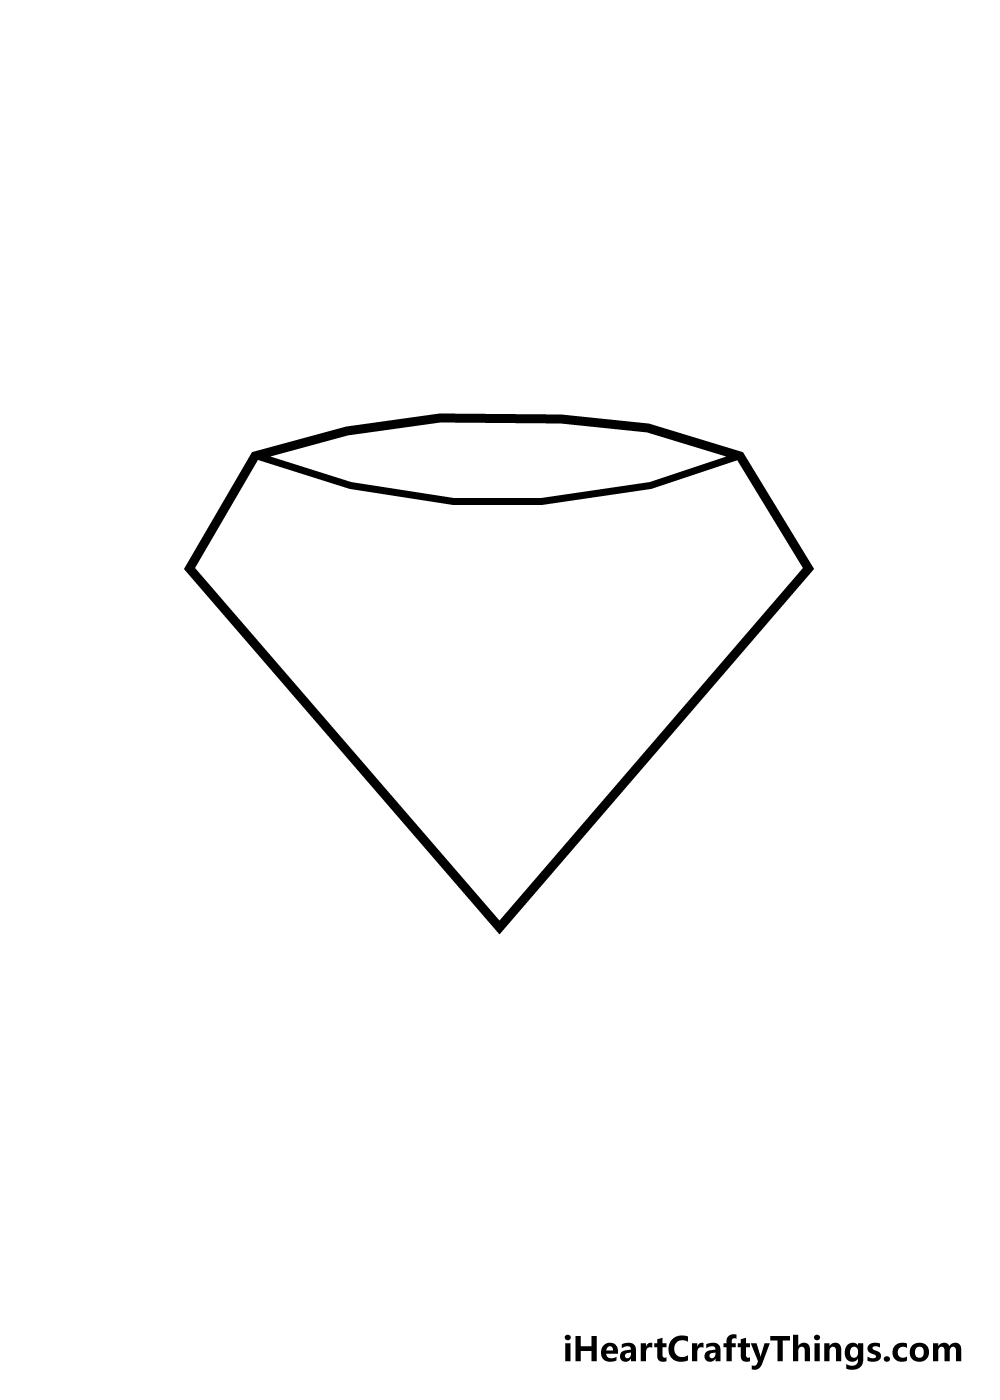 draw diamond step 2